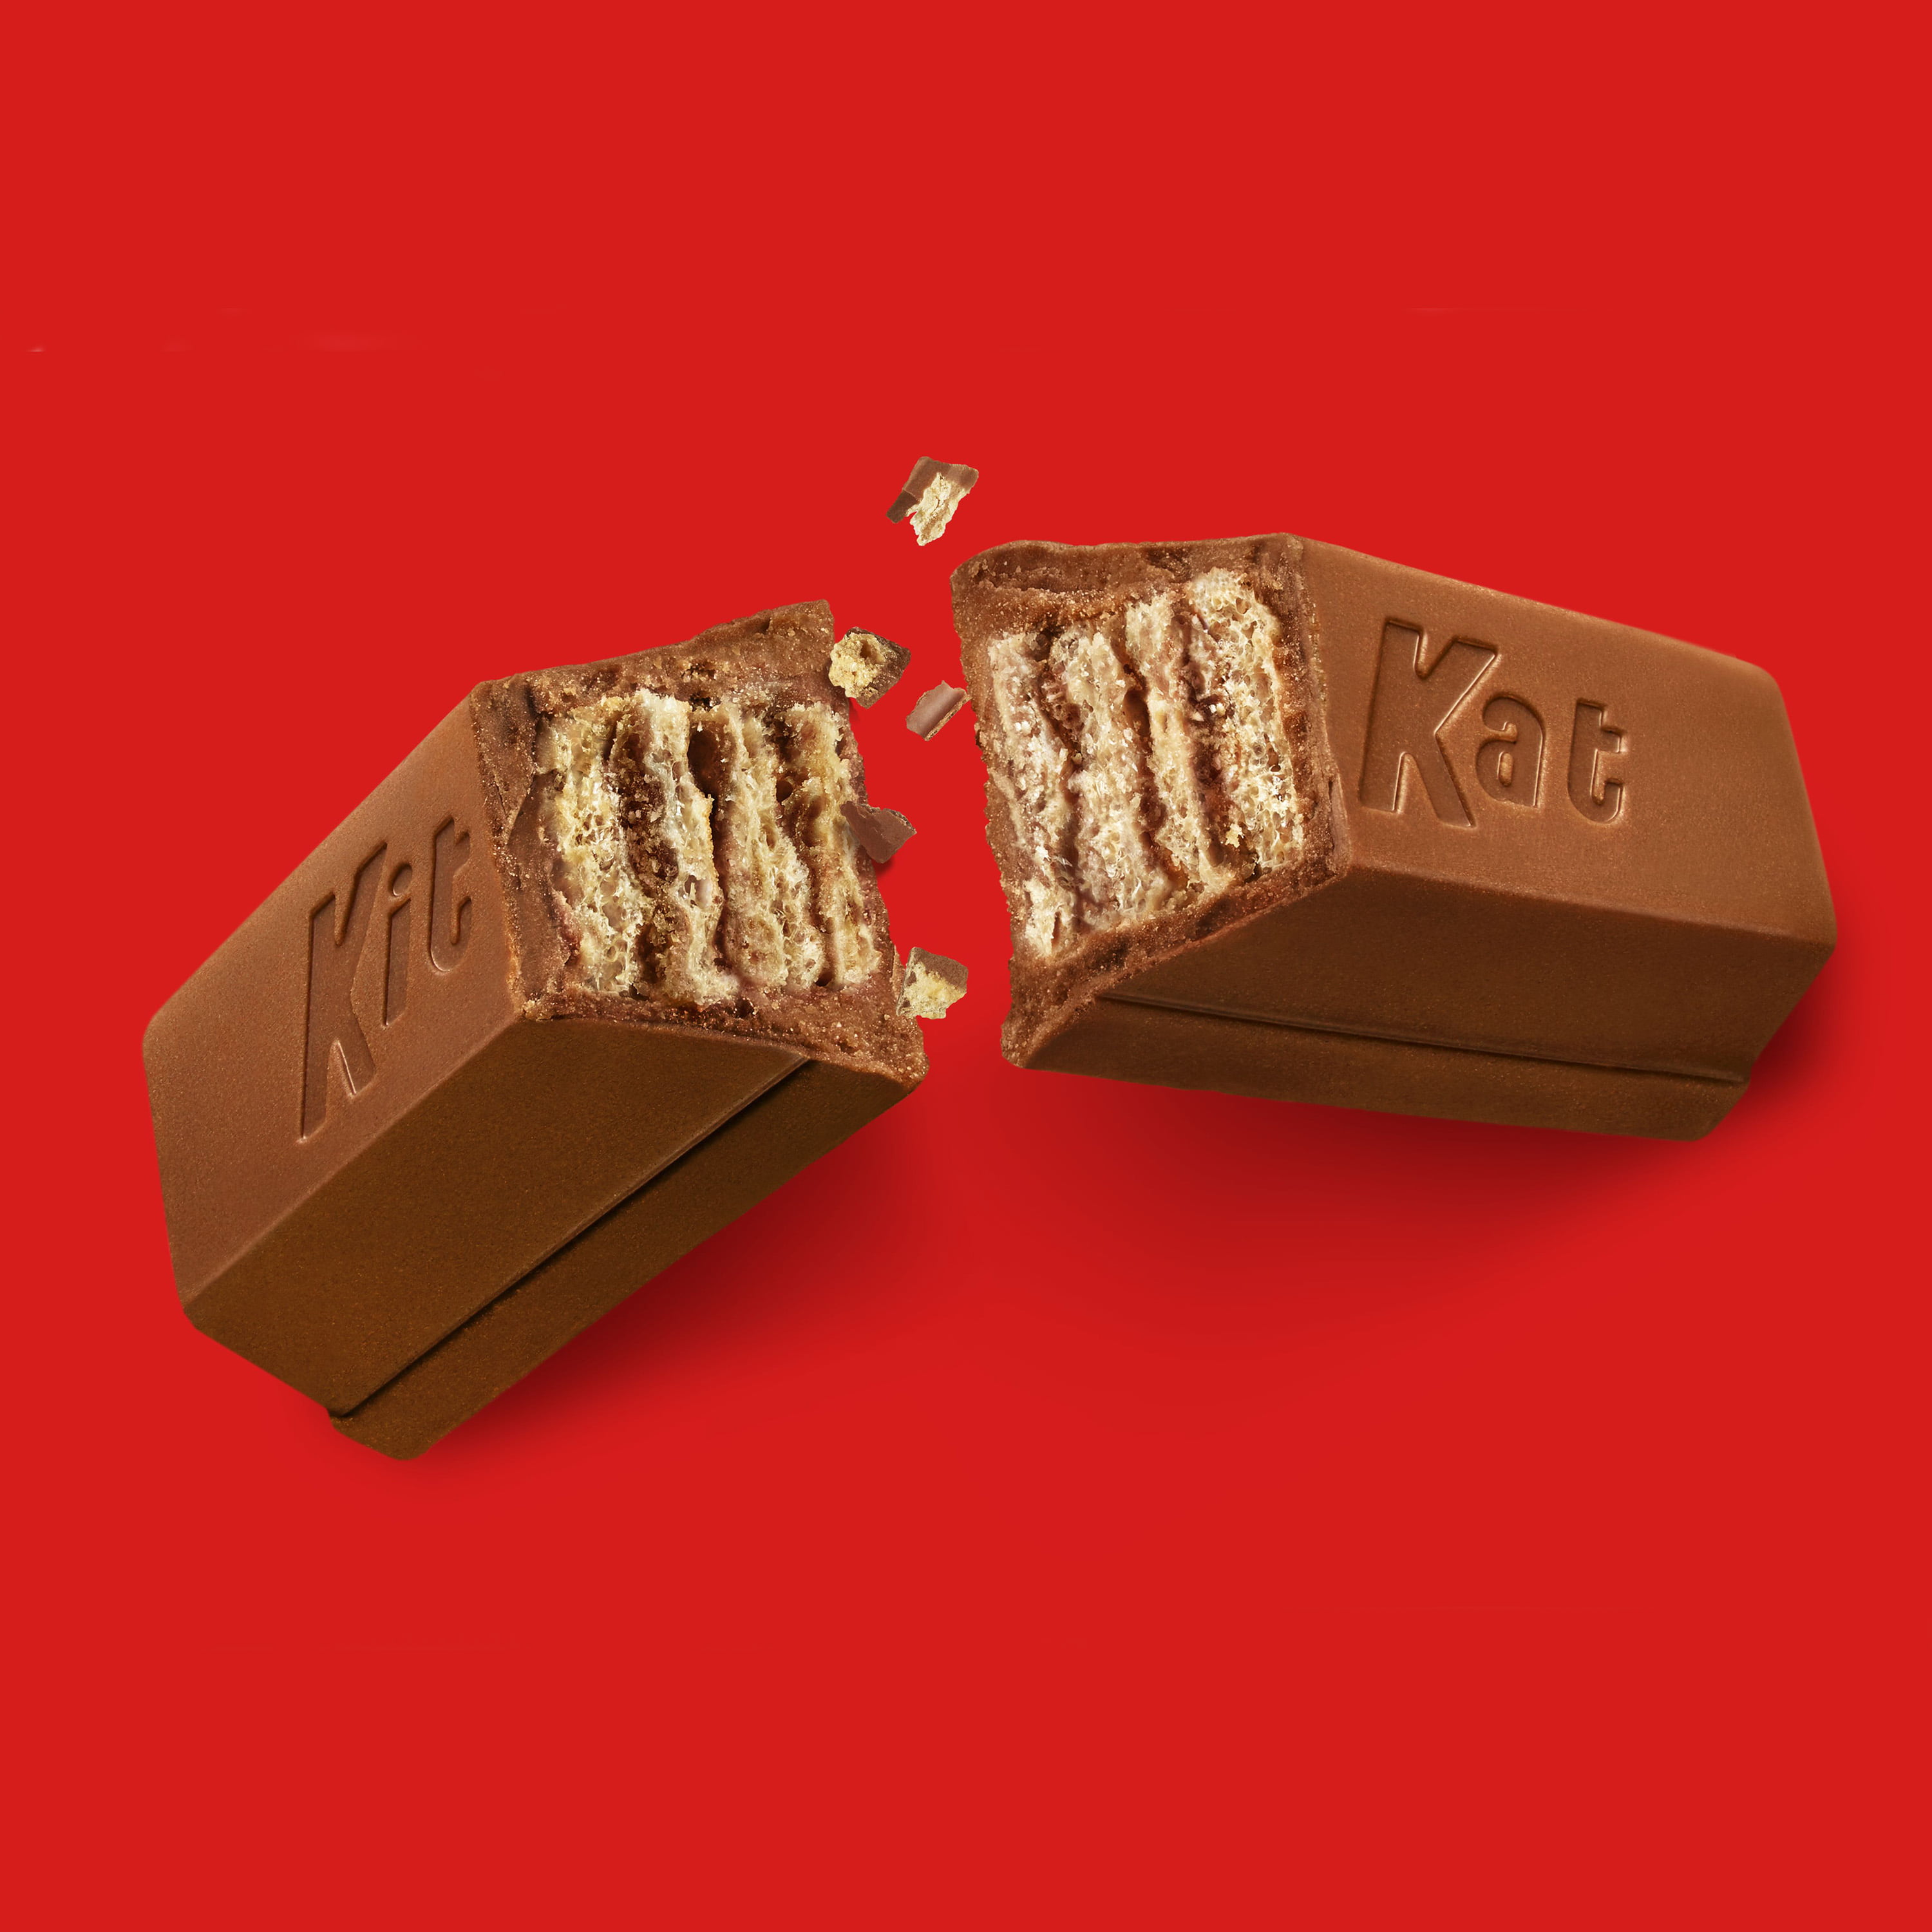 Kit Kat Pops Noisettes Eclats de cacao 110g - carton de 10